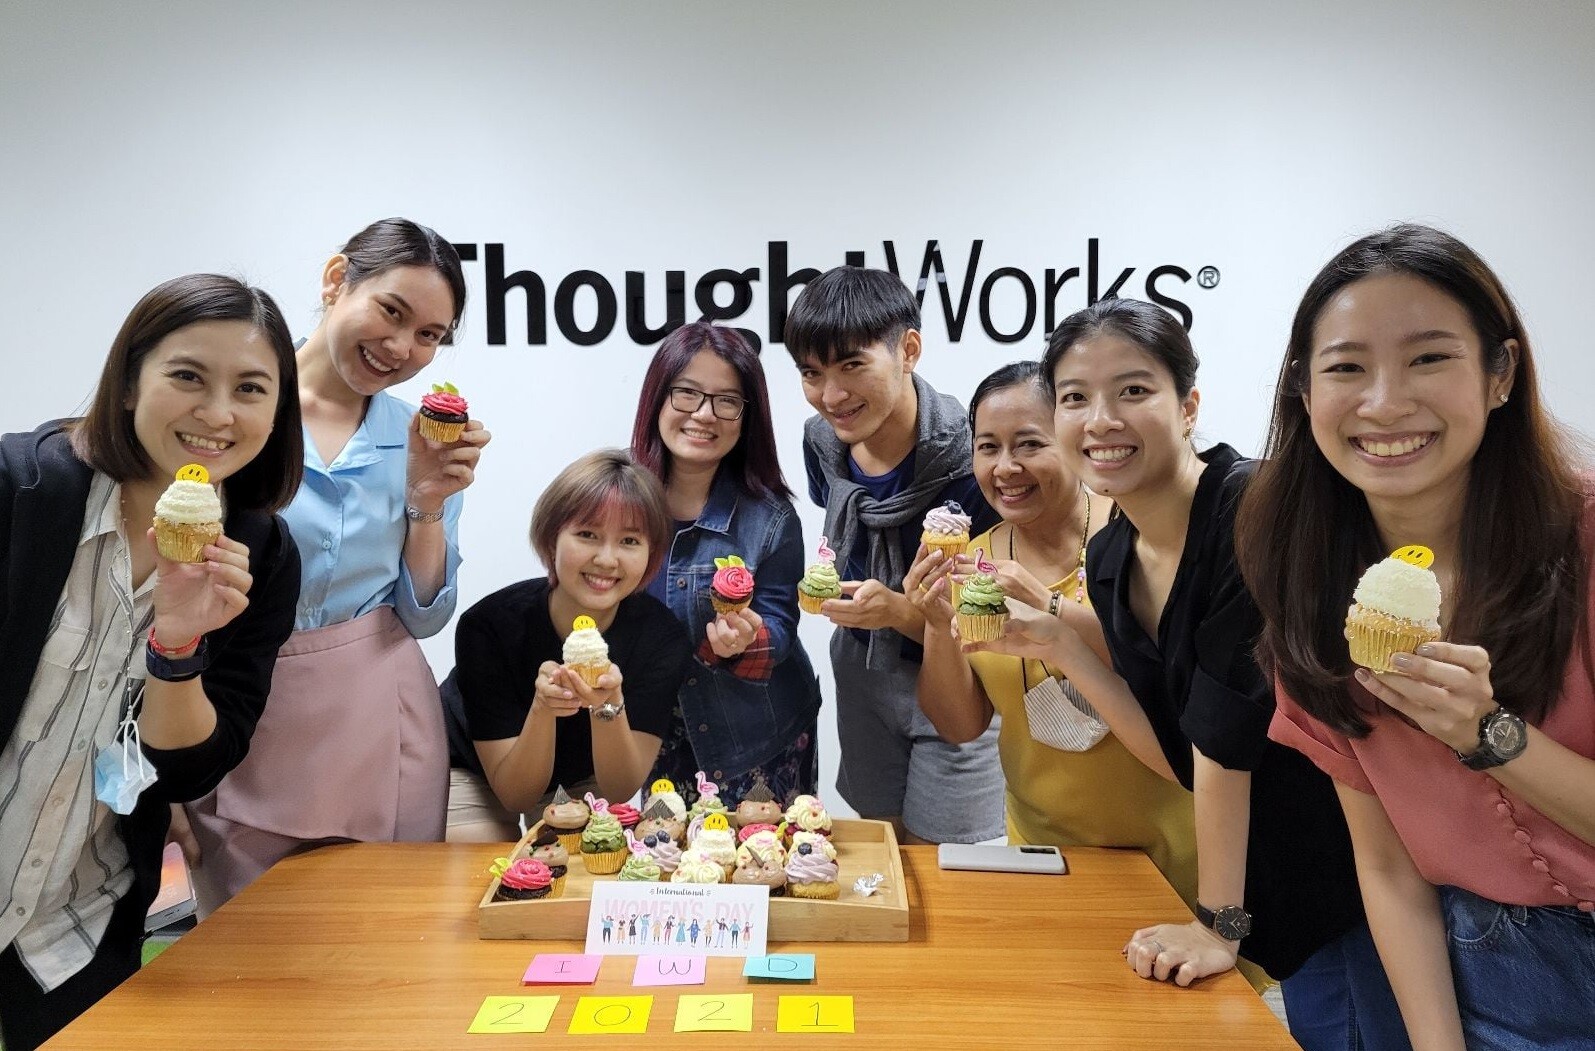 ThoughtWorks ประเทศไทยได้รับการยกย่องให้เป็น 'สถานที่ทำงานยอดเยี่ยม'